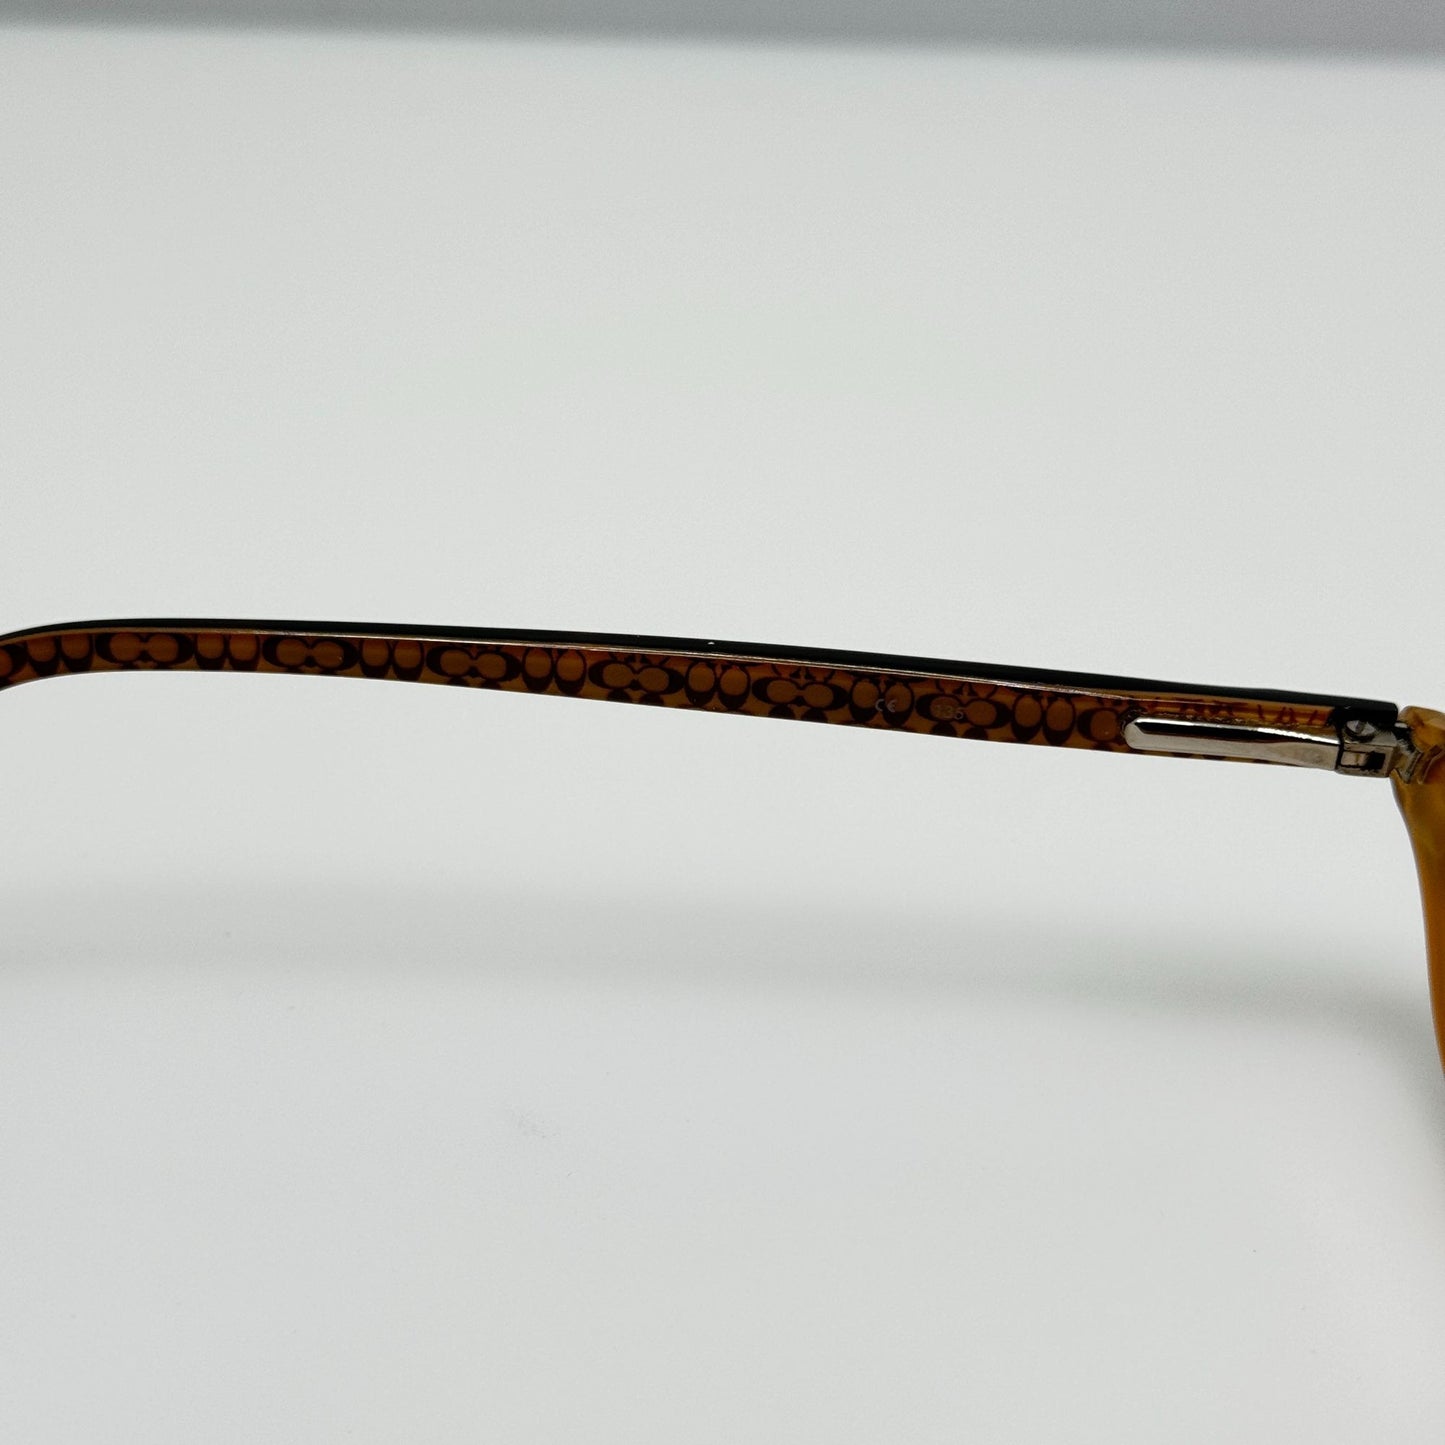 Coach Eyeglasses Eye Glasses Frames Julianne 502 Tortoise 49-15-135